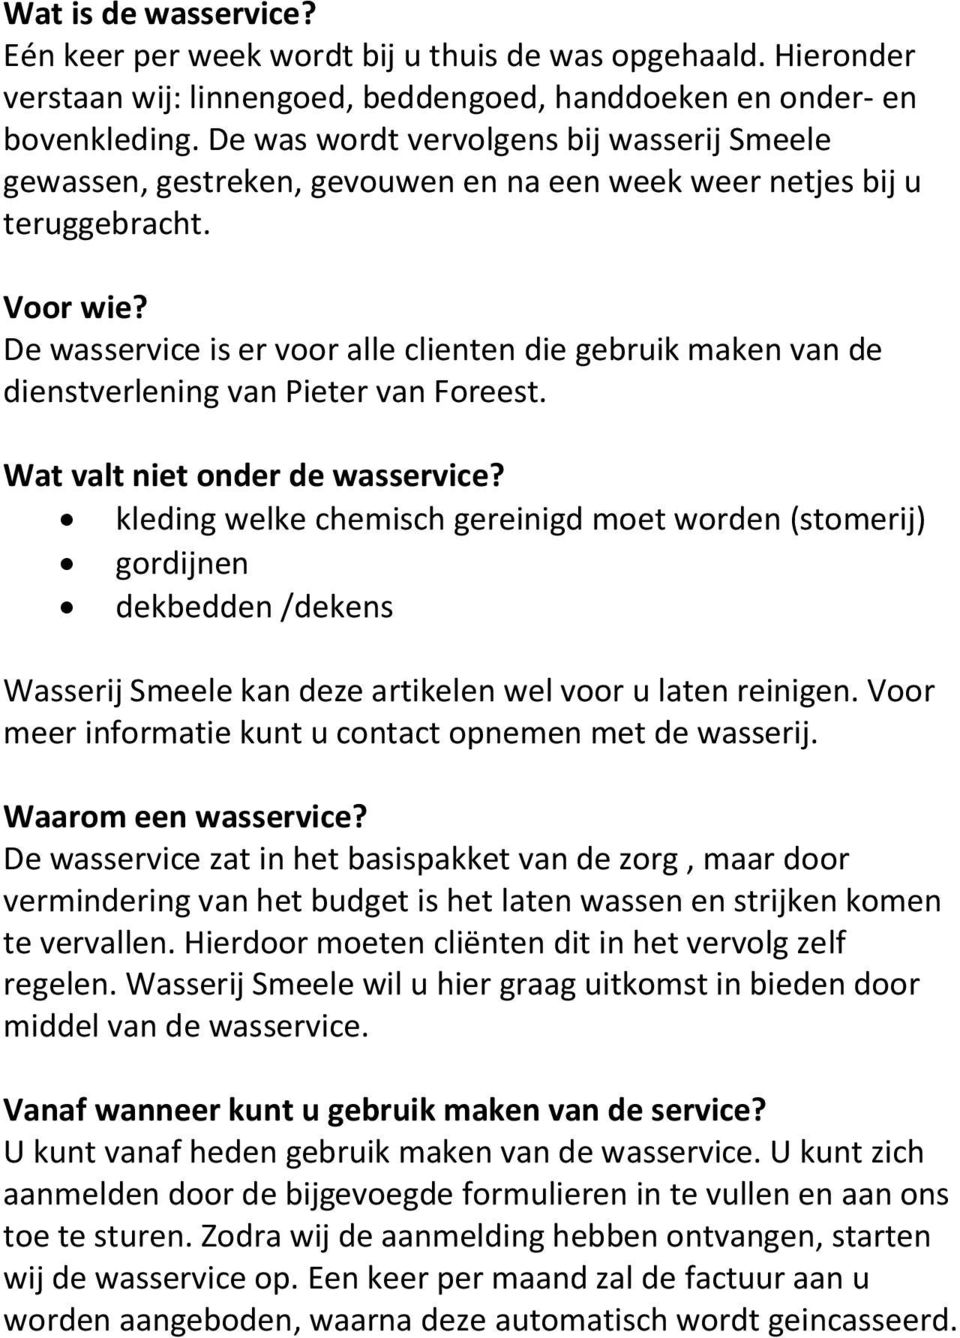 De wasservice is er voor alle clienten die gebruik maken van de dienstverlening van Pieter van Foreest. Wat valt niet onder de wasservice?